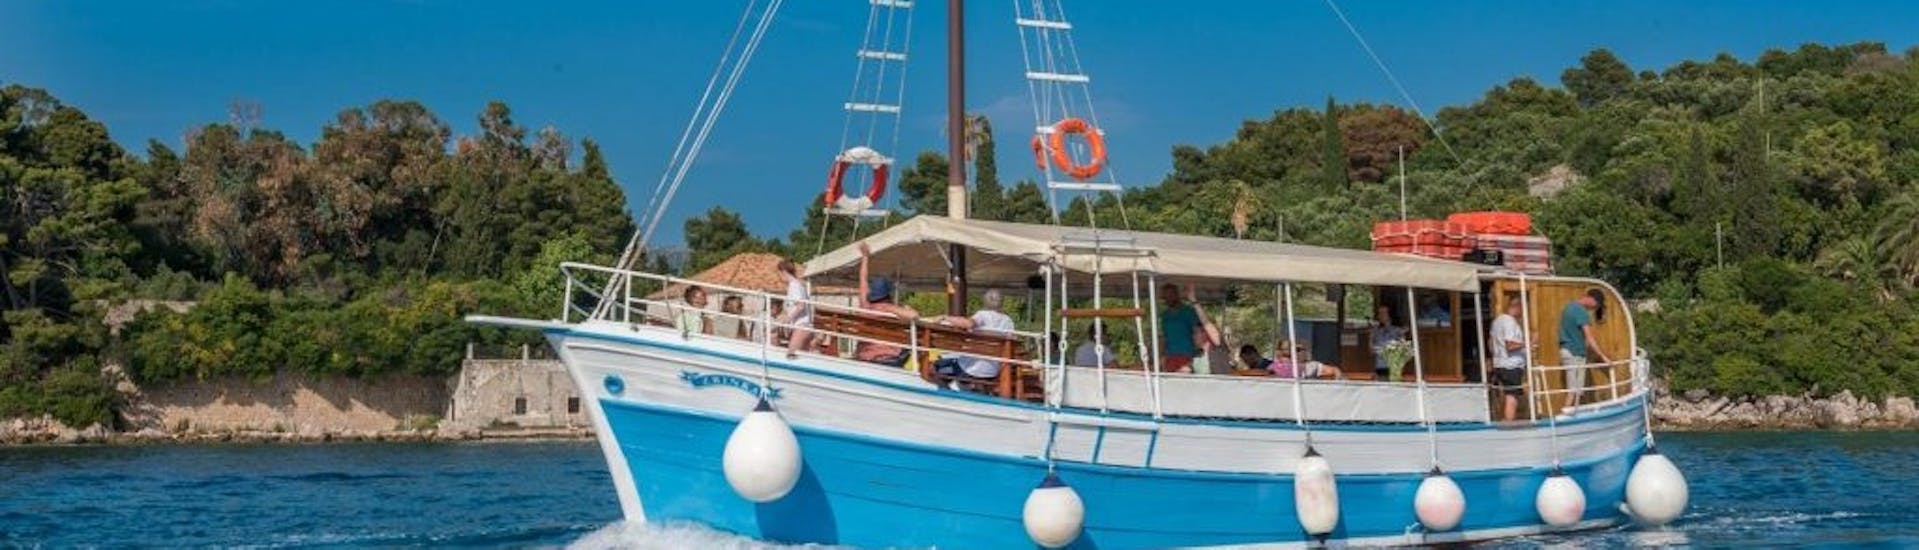 Foto van de boot van Dubrovnik Islands Tours tijdens de boottocht naar de Elaphiti eilanden vanuit Dubrovnik.